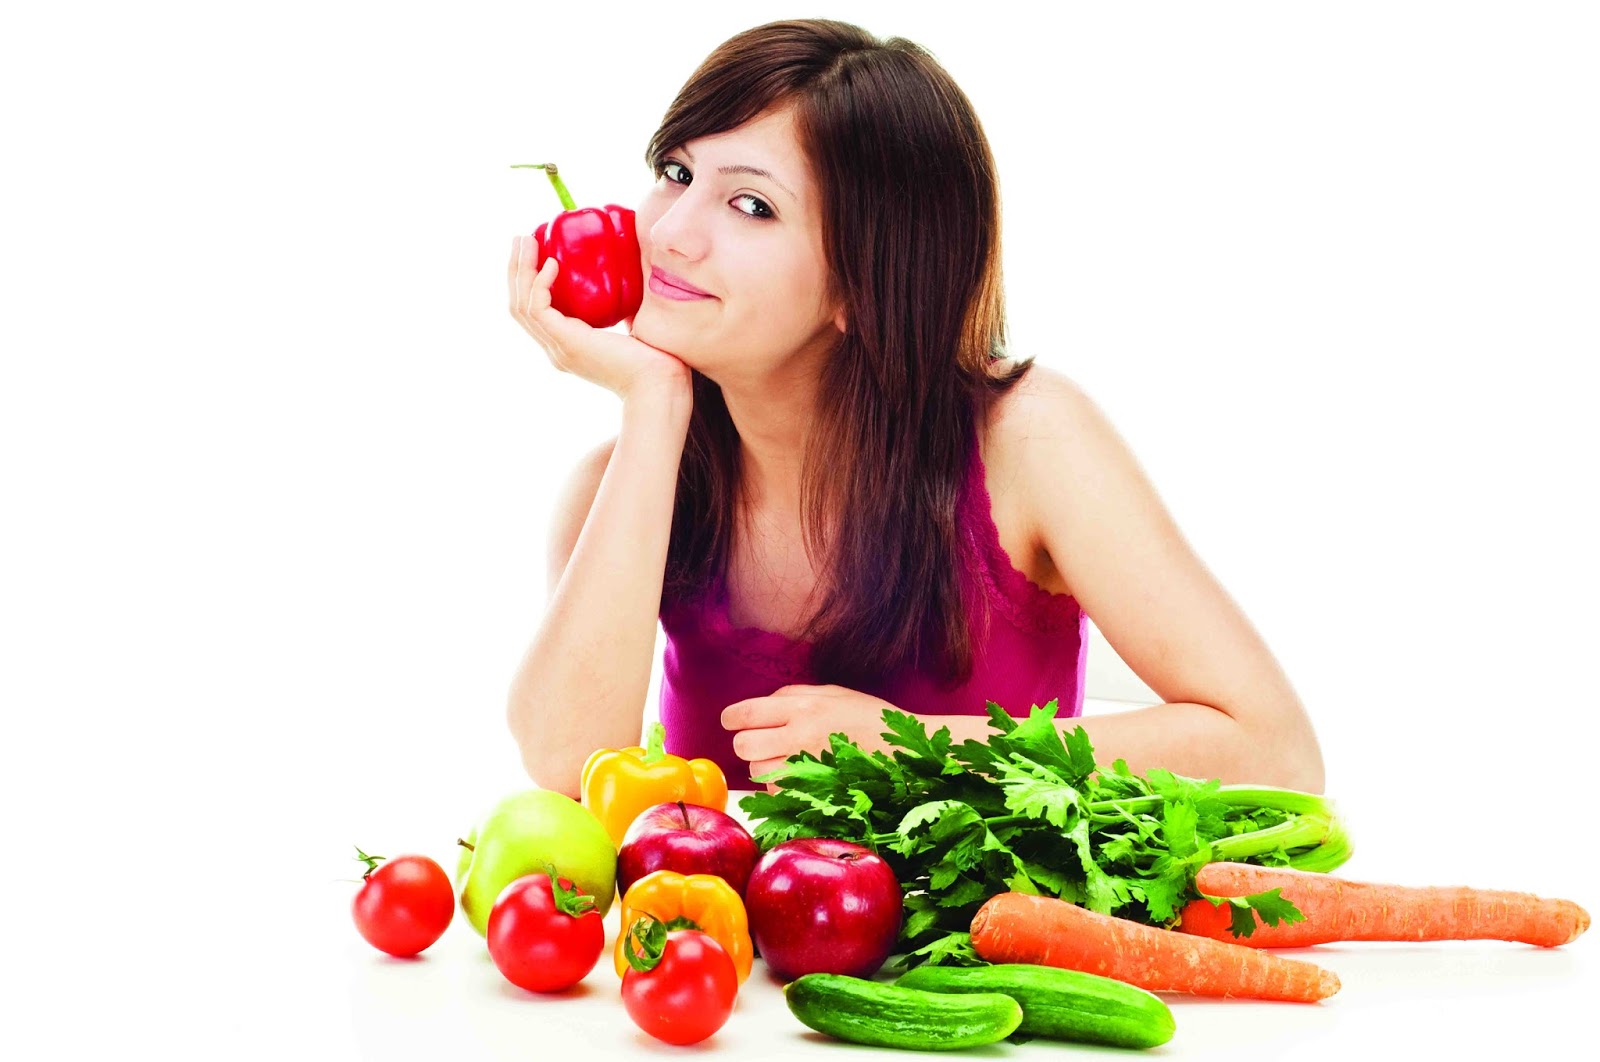 Chế độ ăn nhiều rau, quả giúp làn da bạn luôn trẻ trung, mịn màng